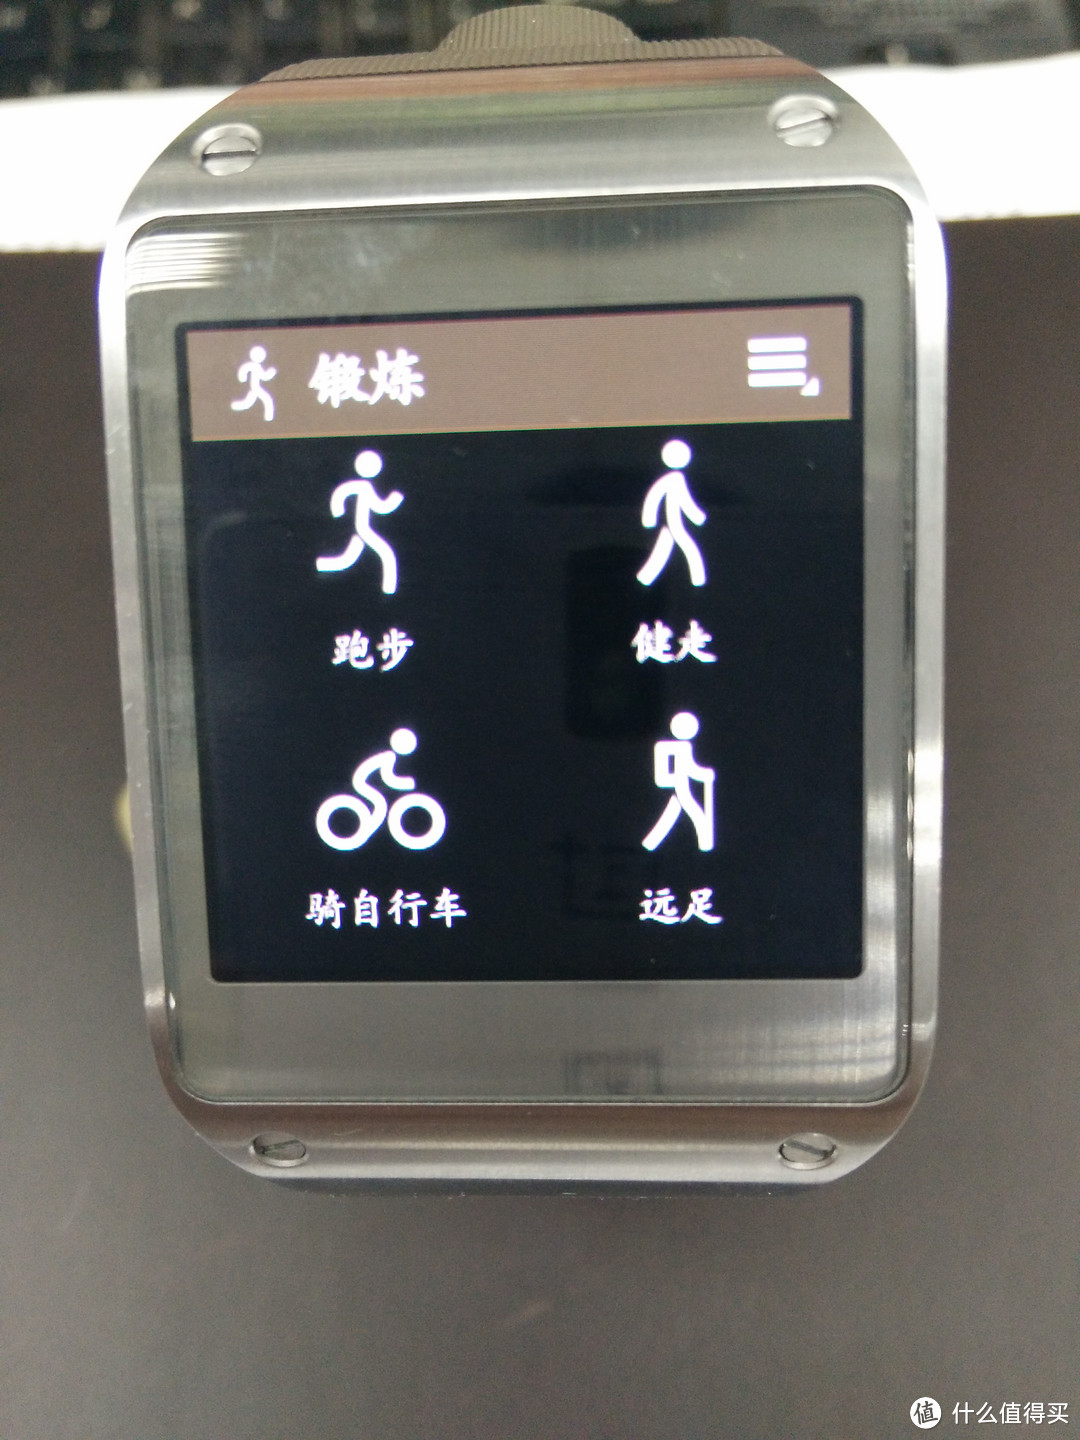 如月之恒，如日之升：Ticwear 中文版 MOTO 360 智能手表测评